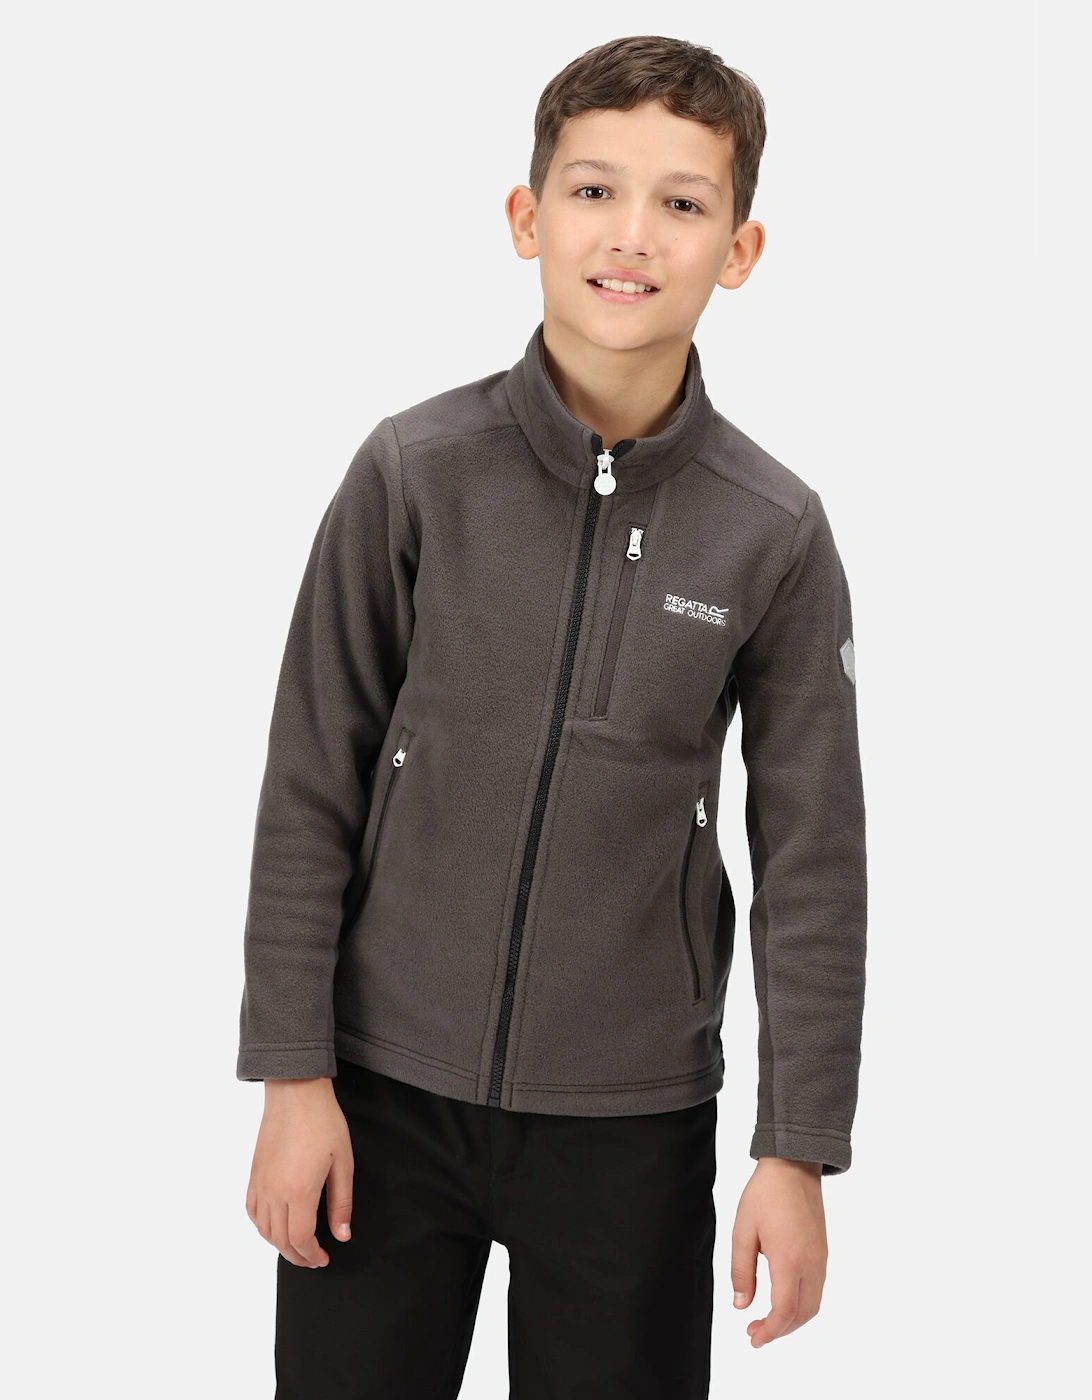 Childrens/Kids Marlin VII Full Zip Fleece Jacket